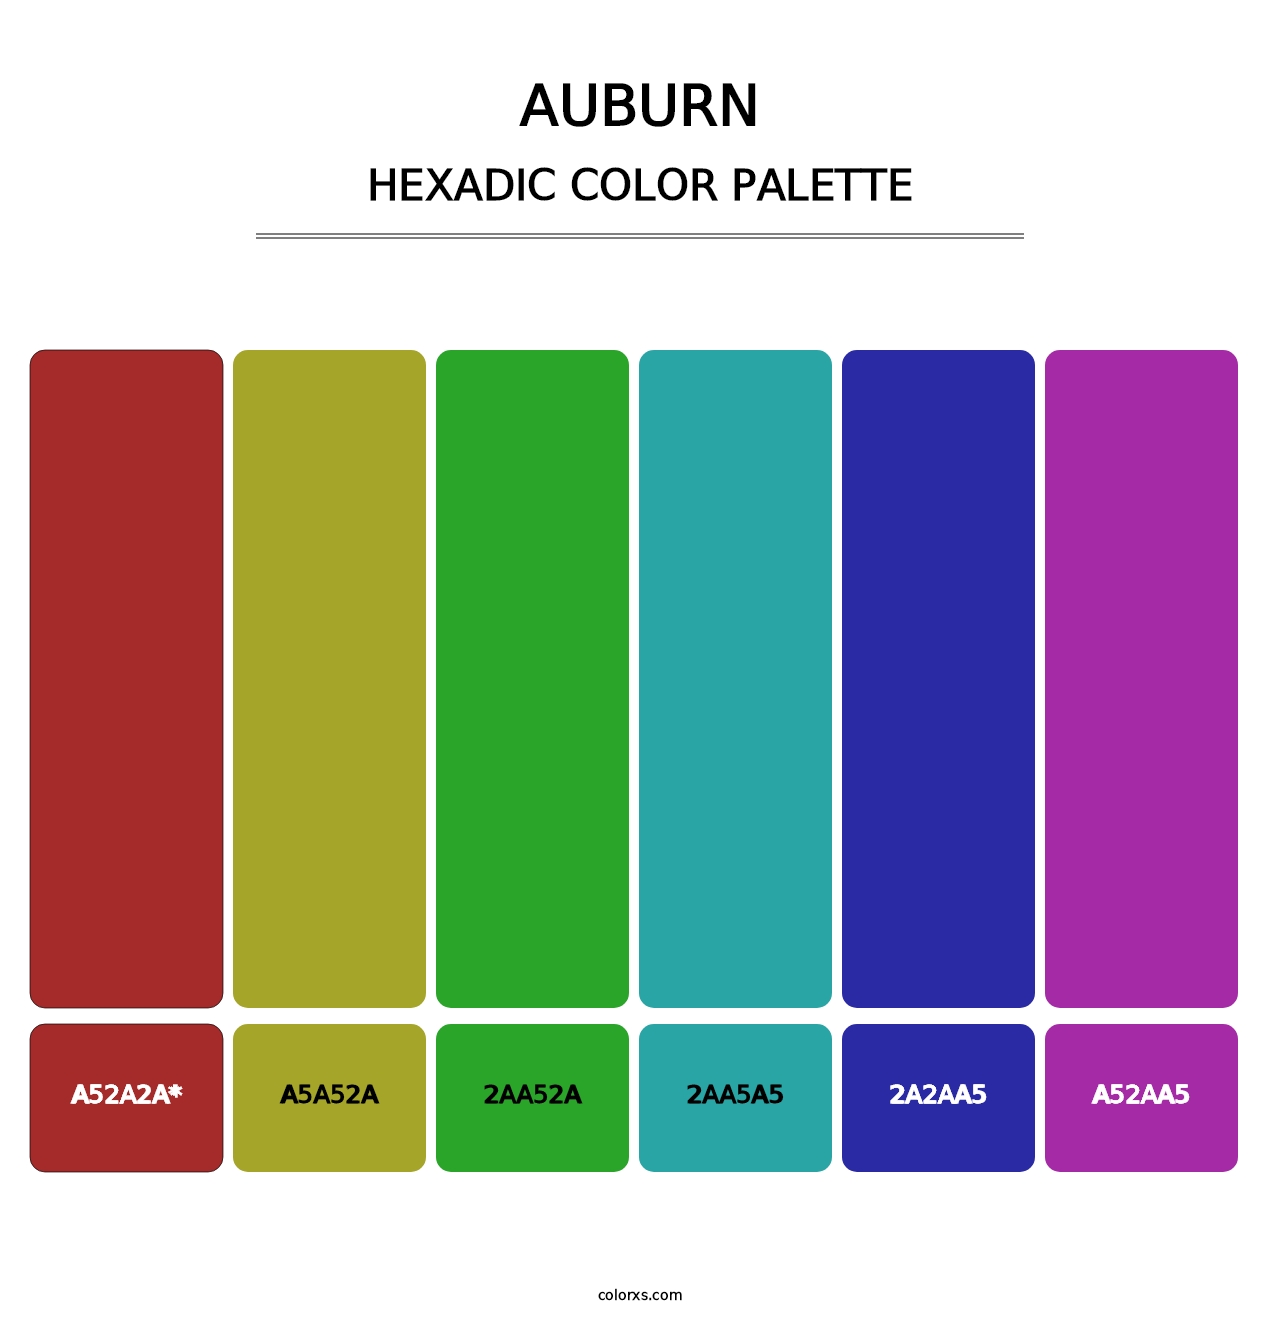 Auburn - Hexadic Color Palette